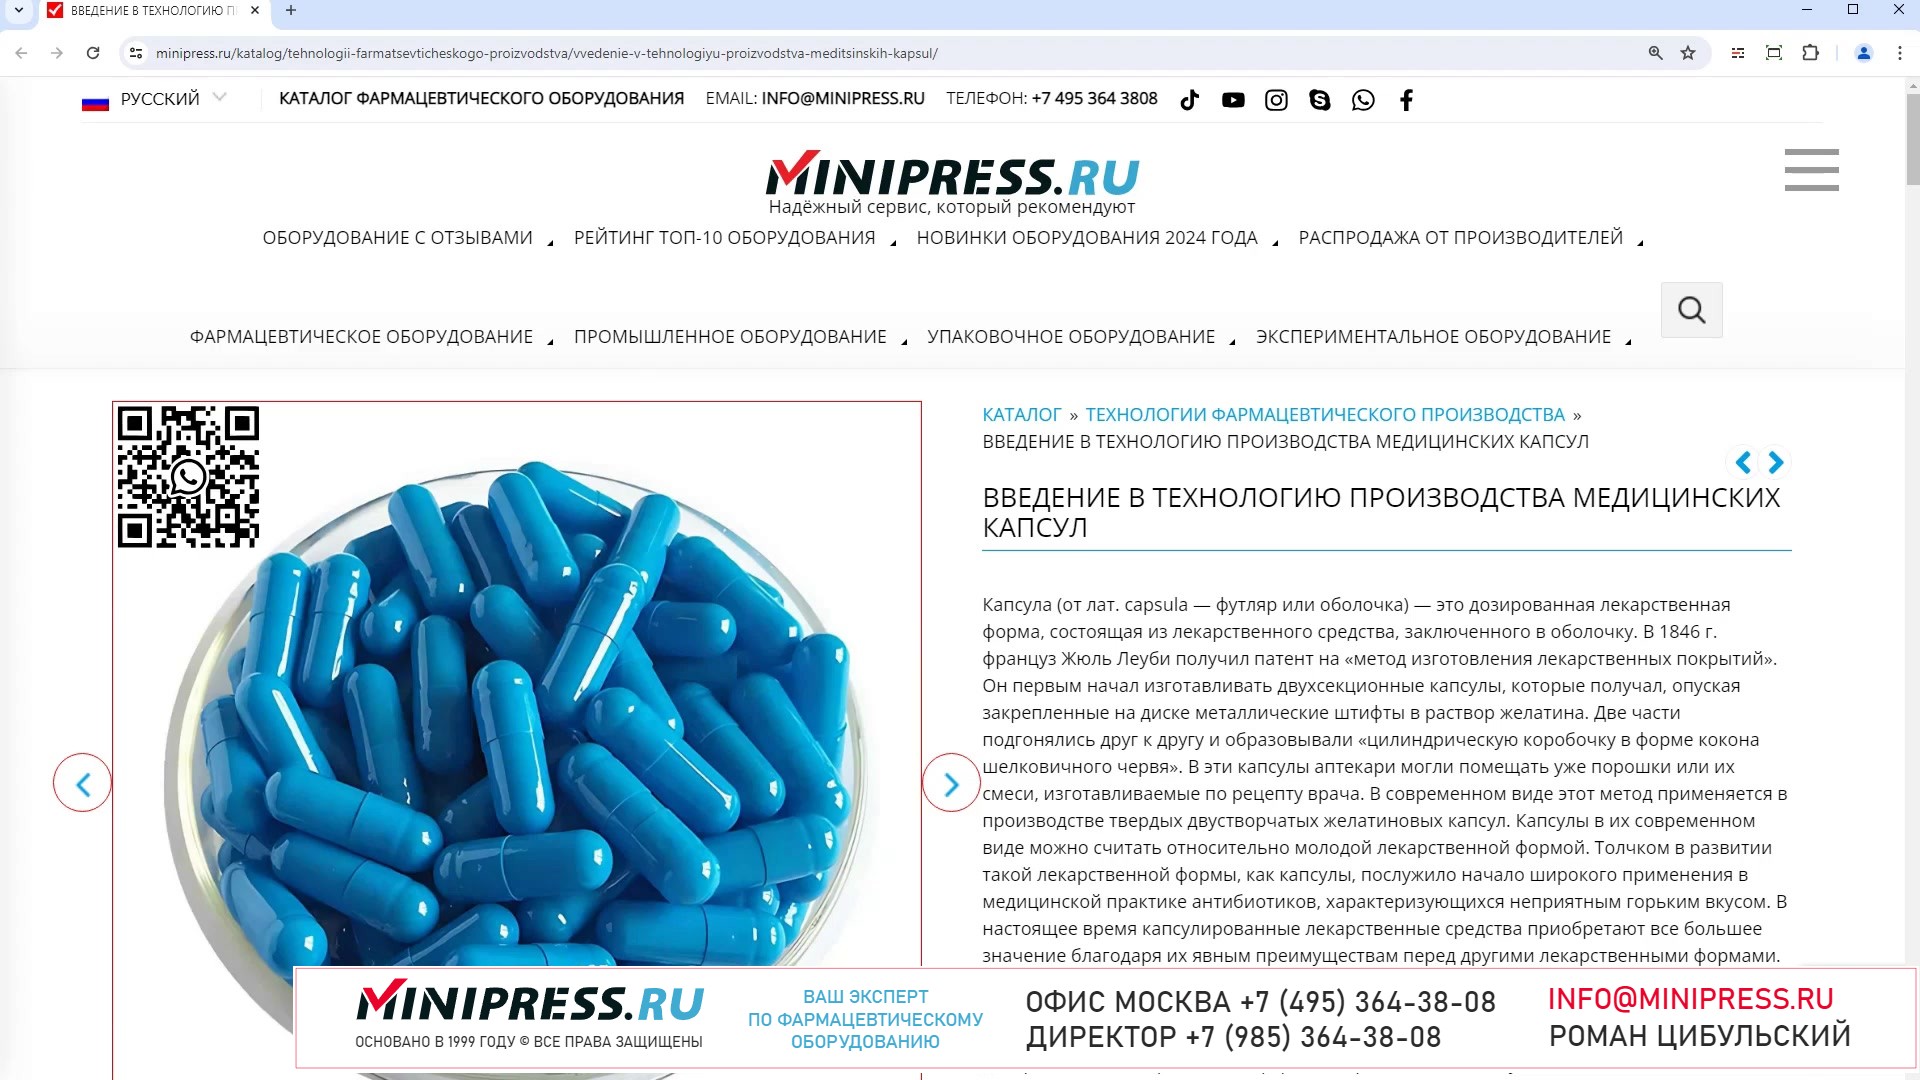 Minipress.ru Введение в технологию производства медицинских капсул